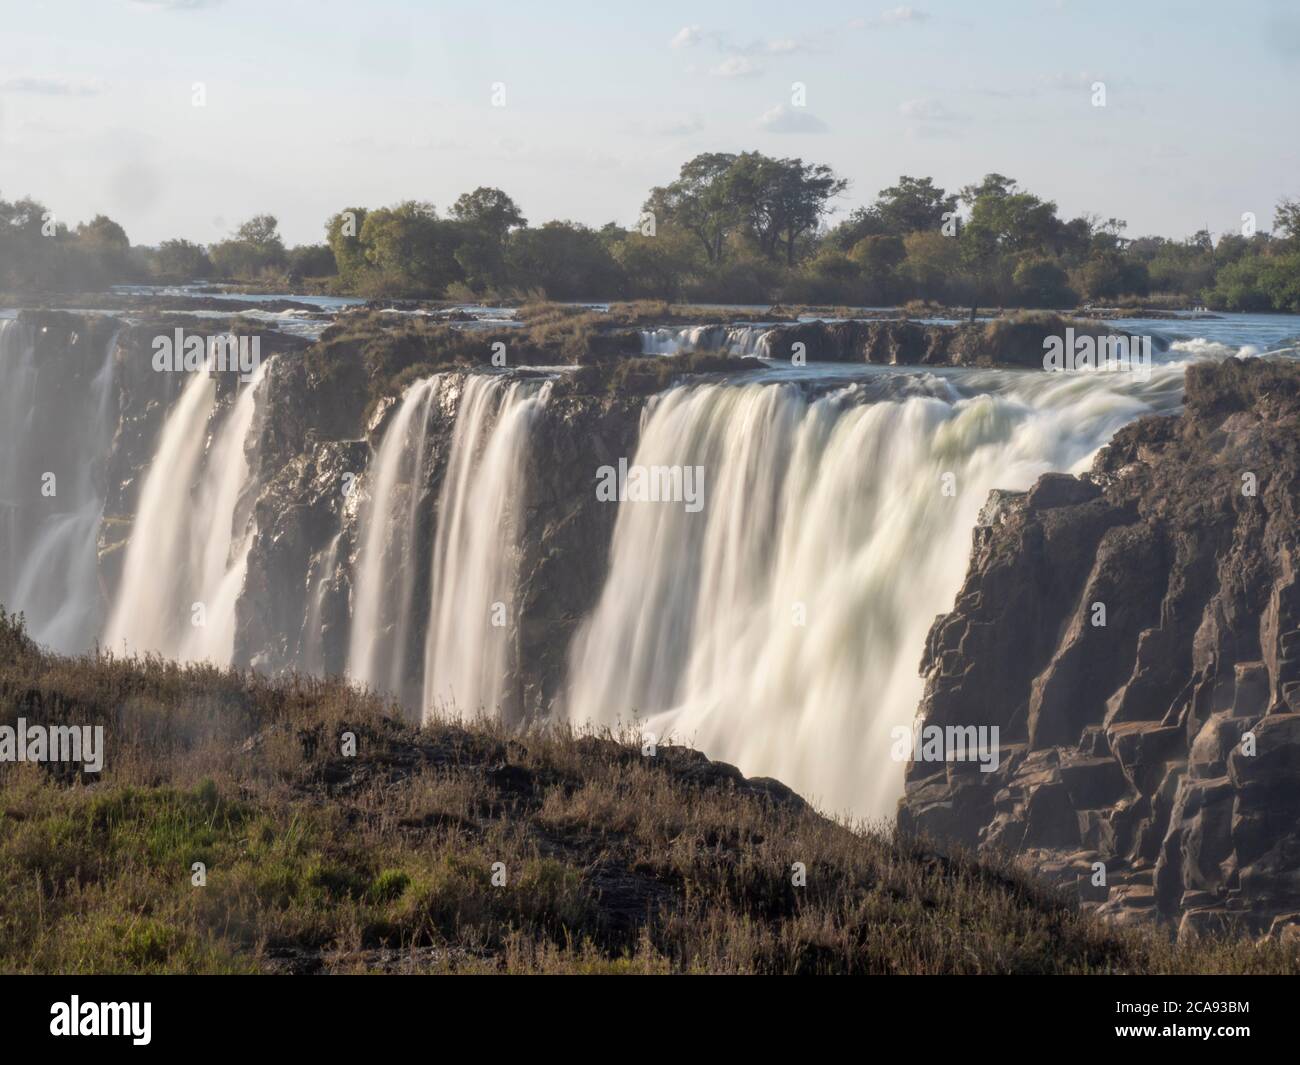 Blick auf die Victoria Falls am Zambezi River, UNESCO-Weltkulturerbe, die Grenze zwischen Sambia und Simbabwe, Afrika Stockfoto